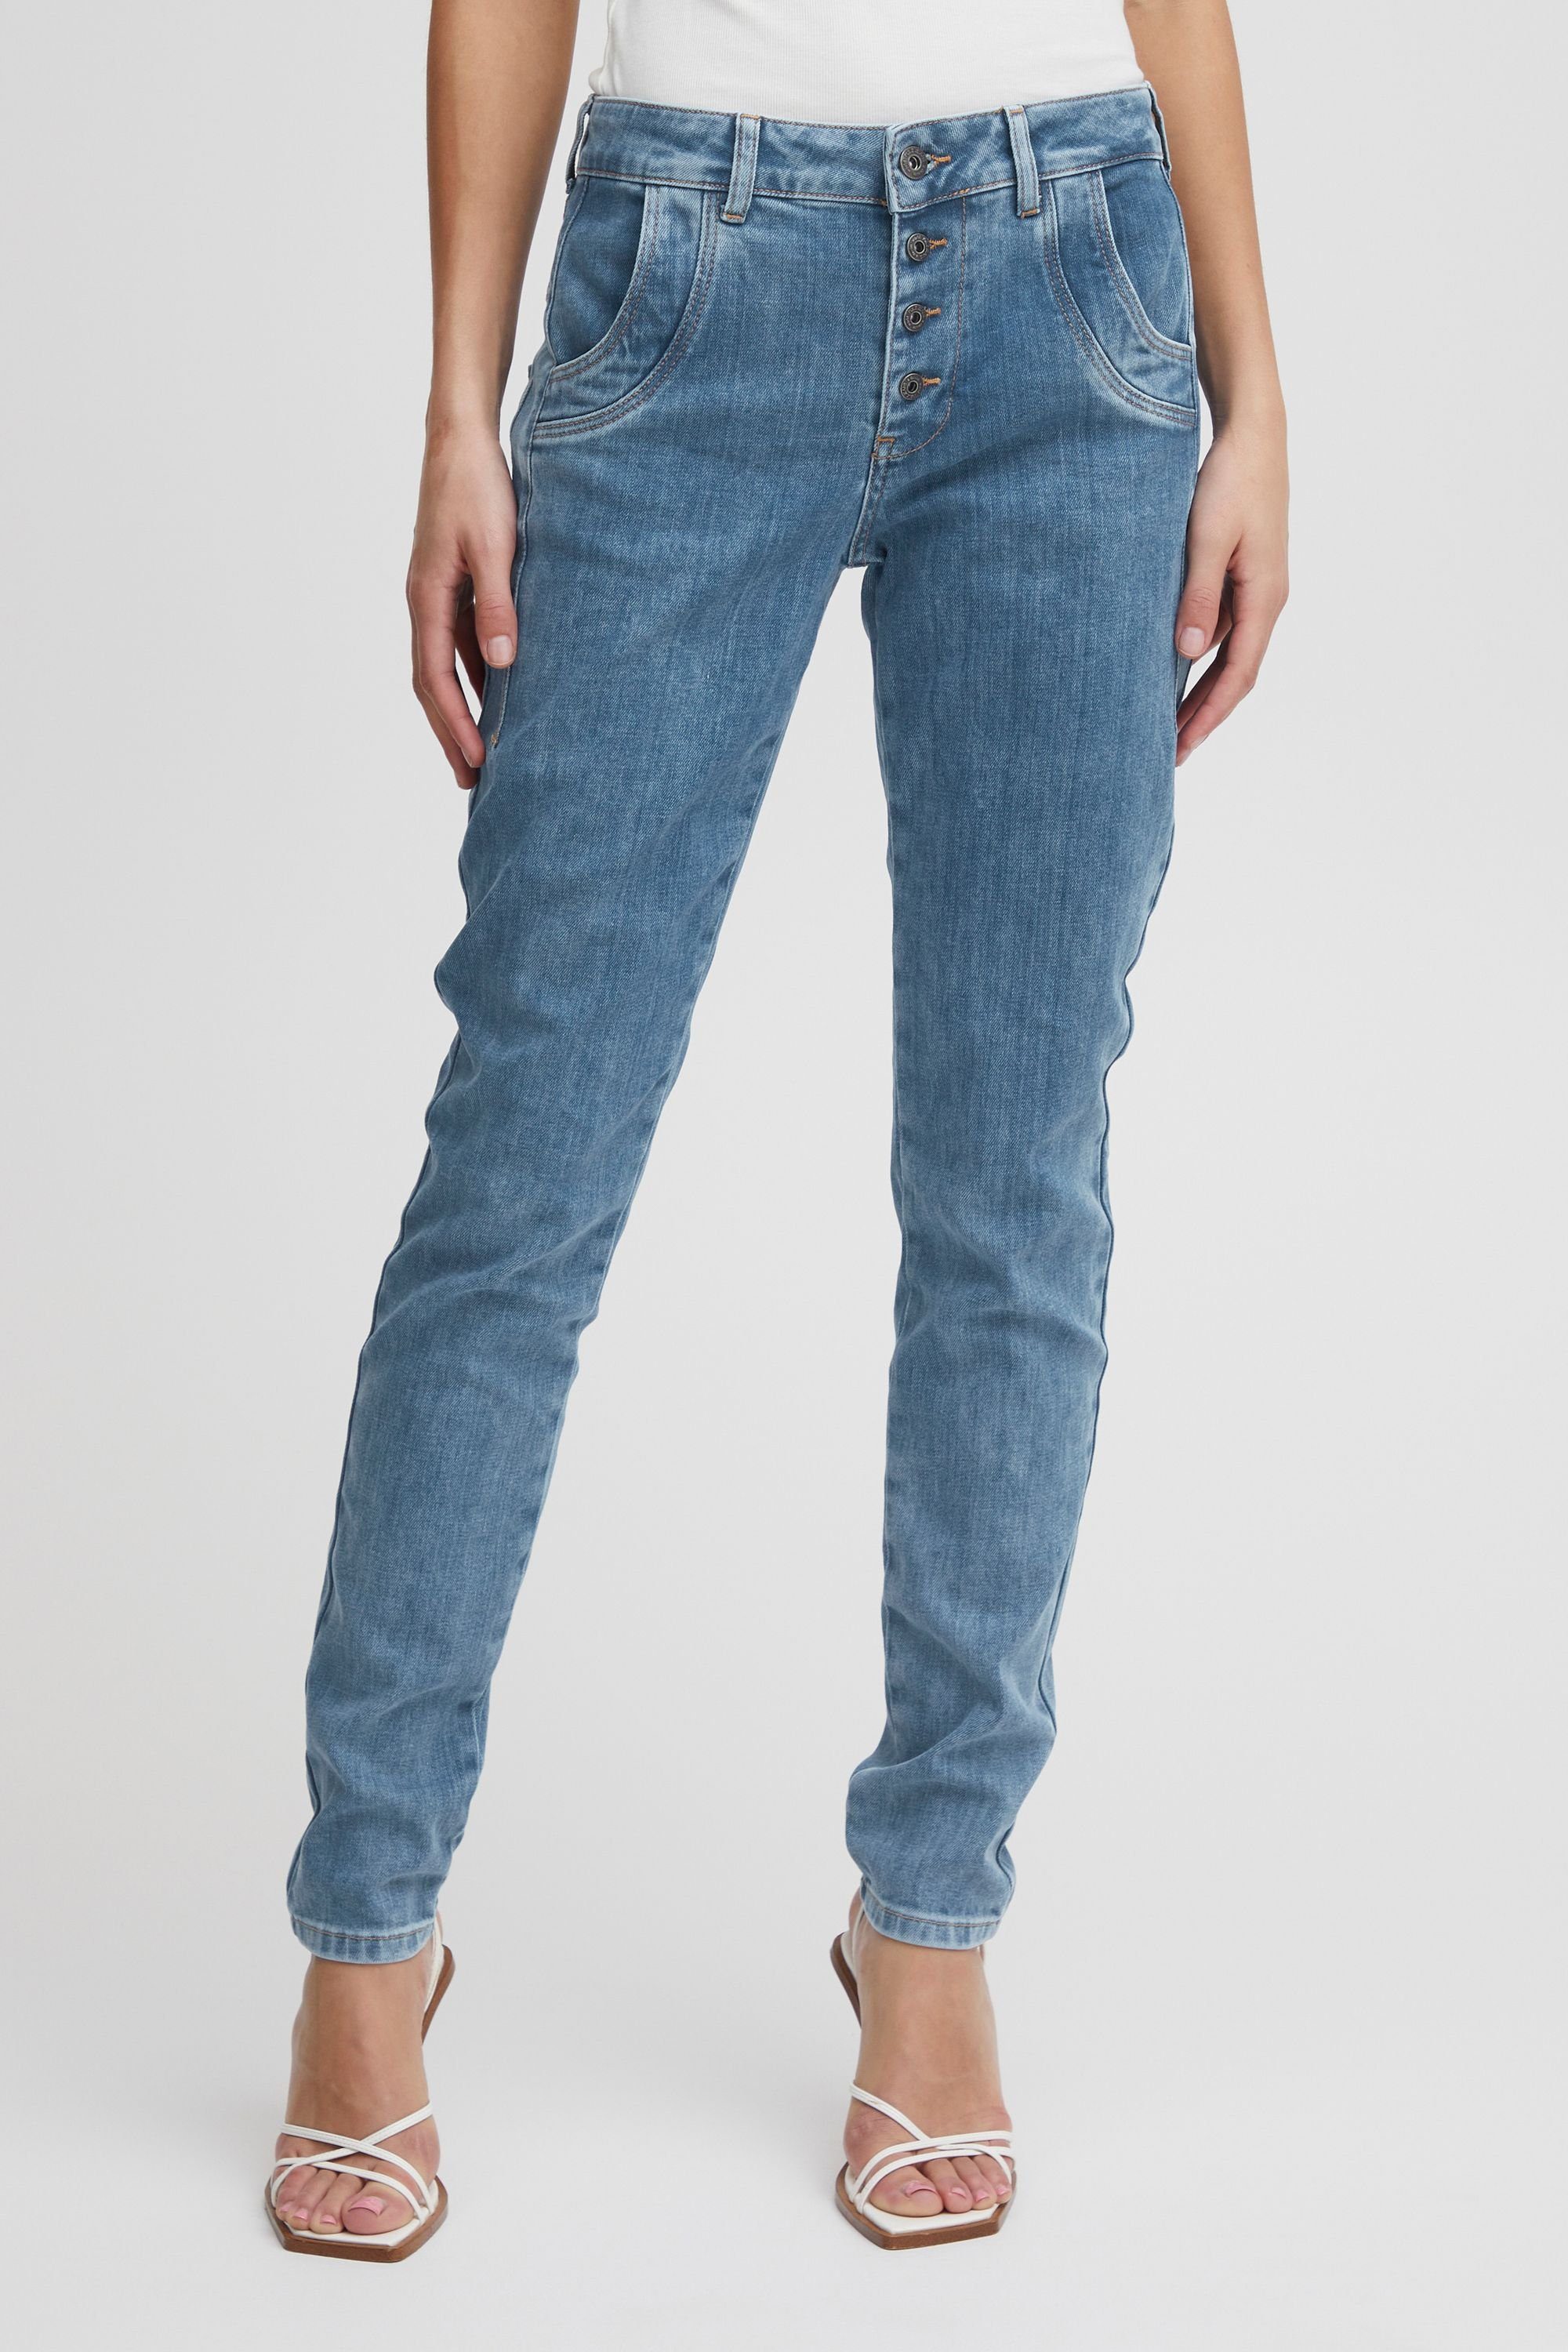 Jeans Denim Leg Skinny Blue (200008) Jeans PZMELINA Pulz Light Loose 5-Pocket-Jeans